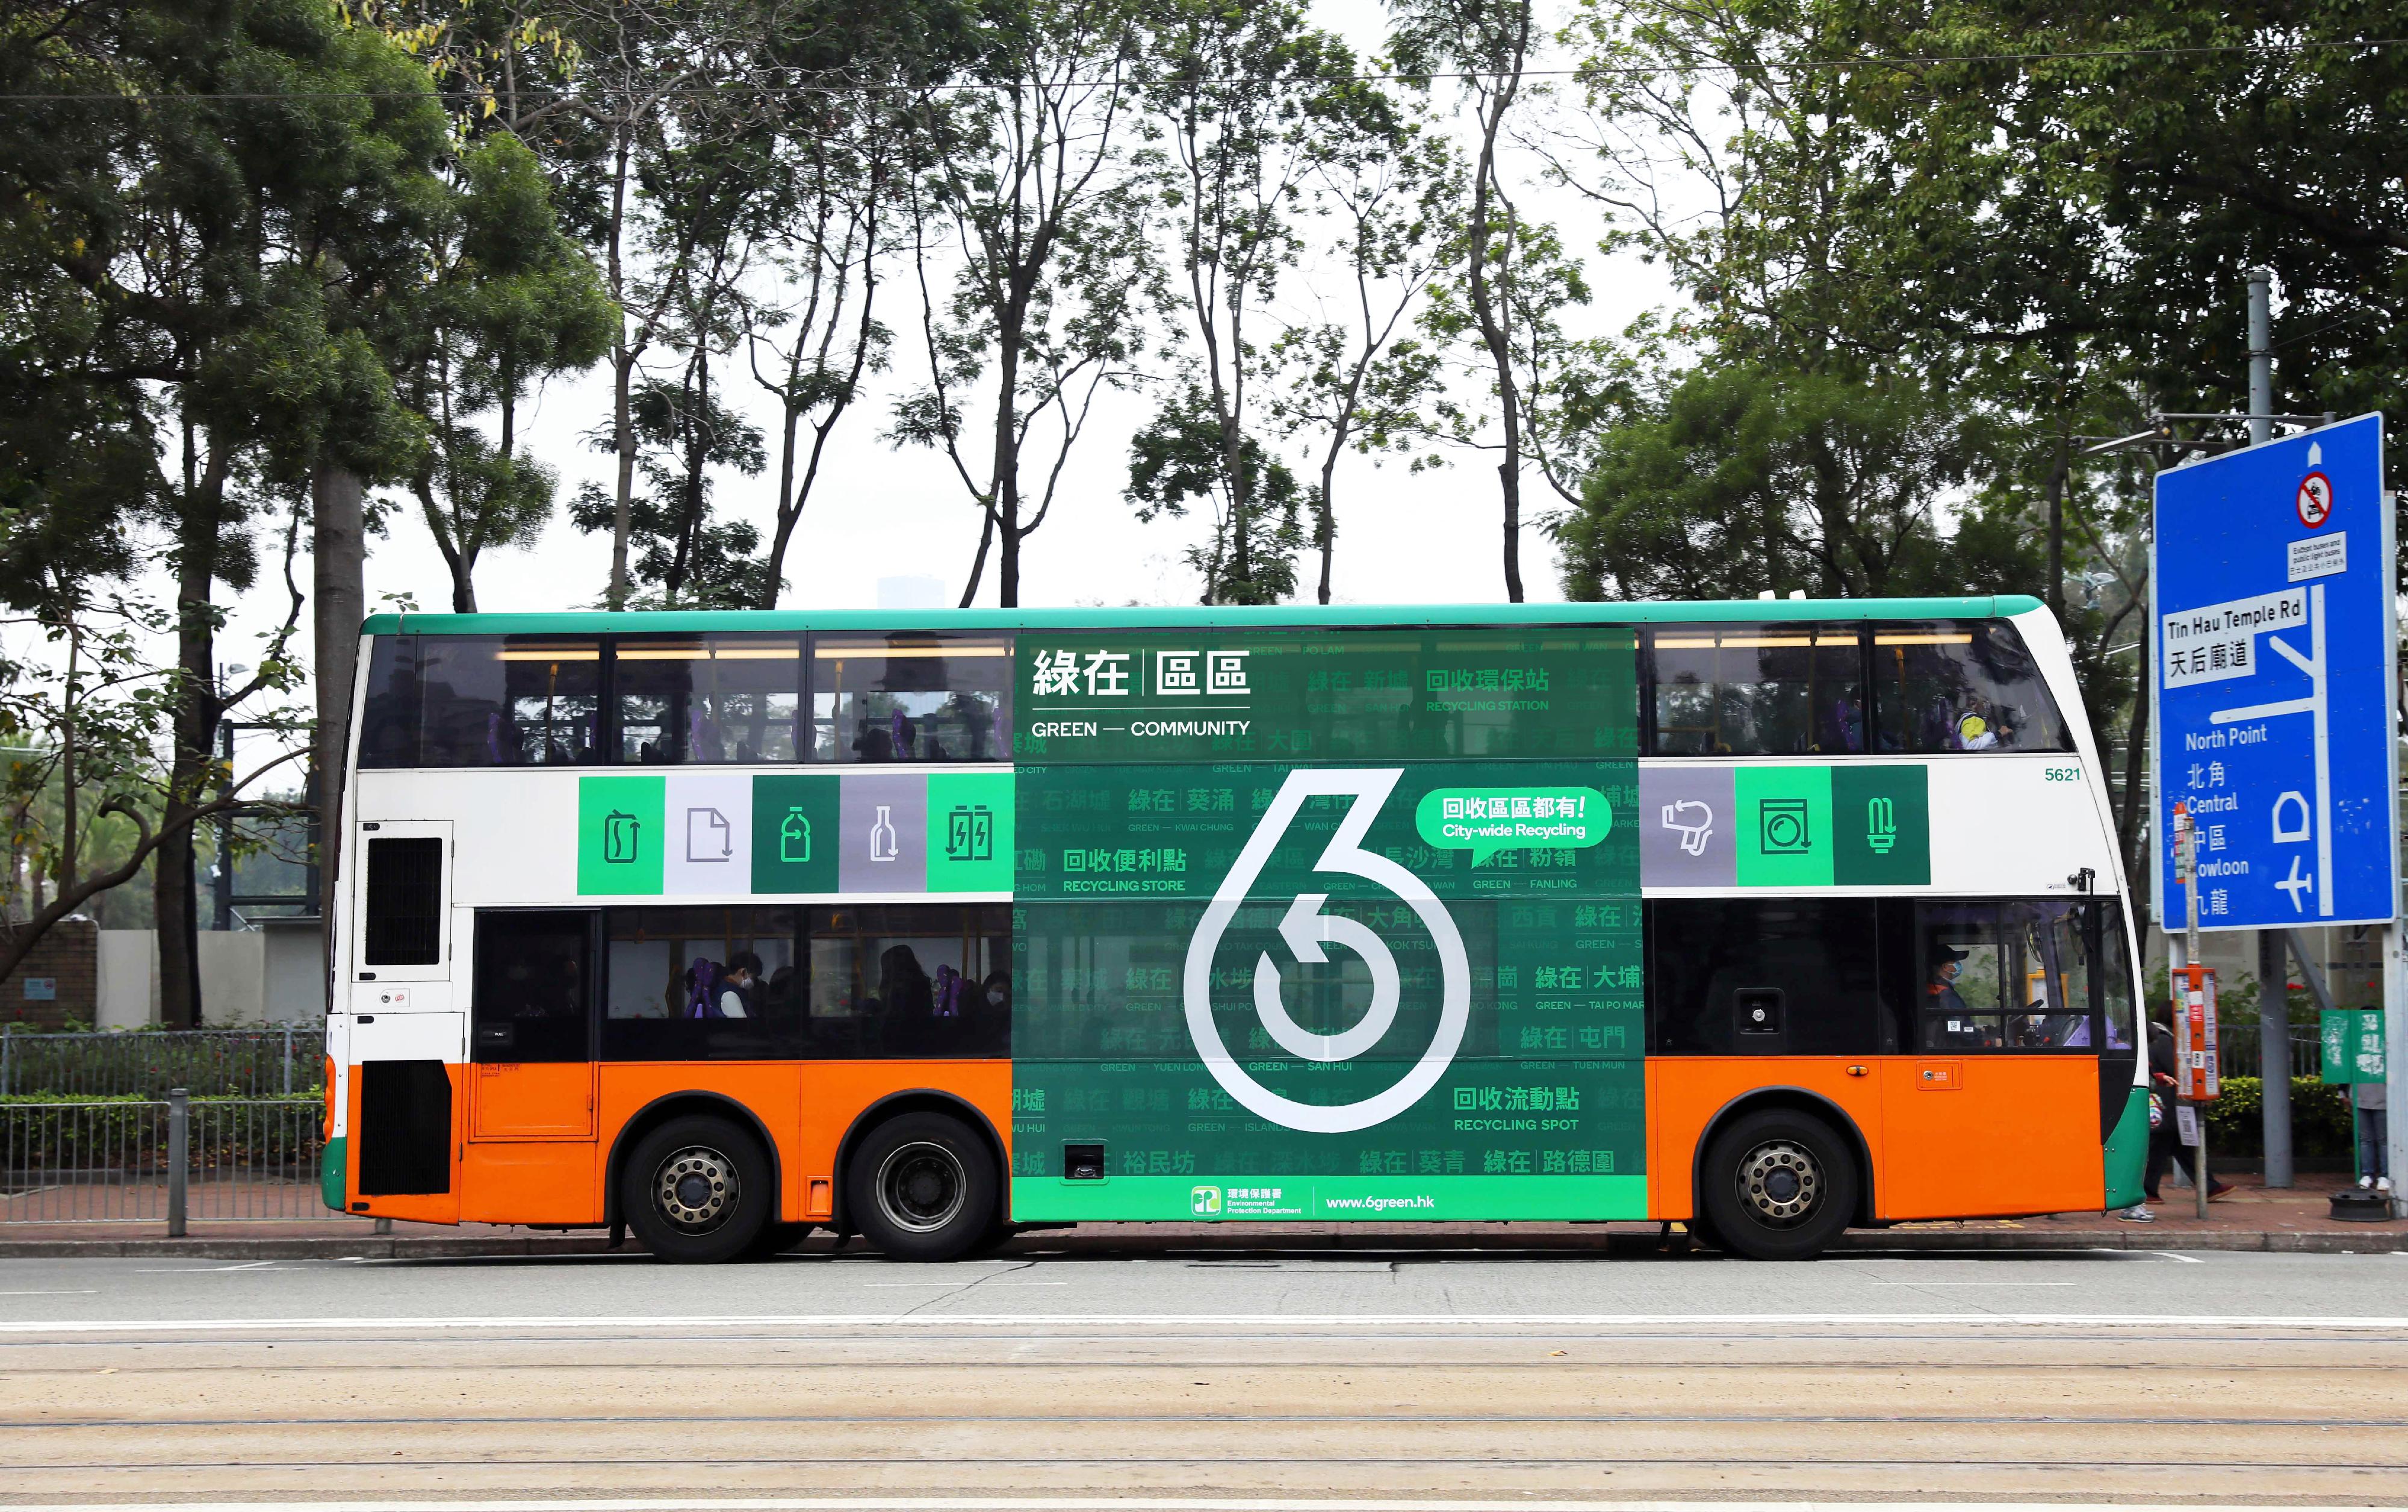 環境保護署在公共交通工具加強宣傳和推廣不斷提升服務的社區回收網絡，鼓勵市民利用「綠在區區」設施進行回收。圖示巴士車身的廣告。